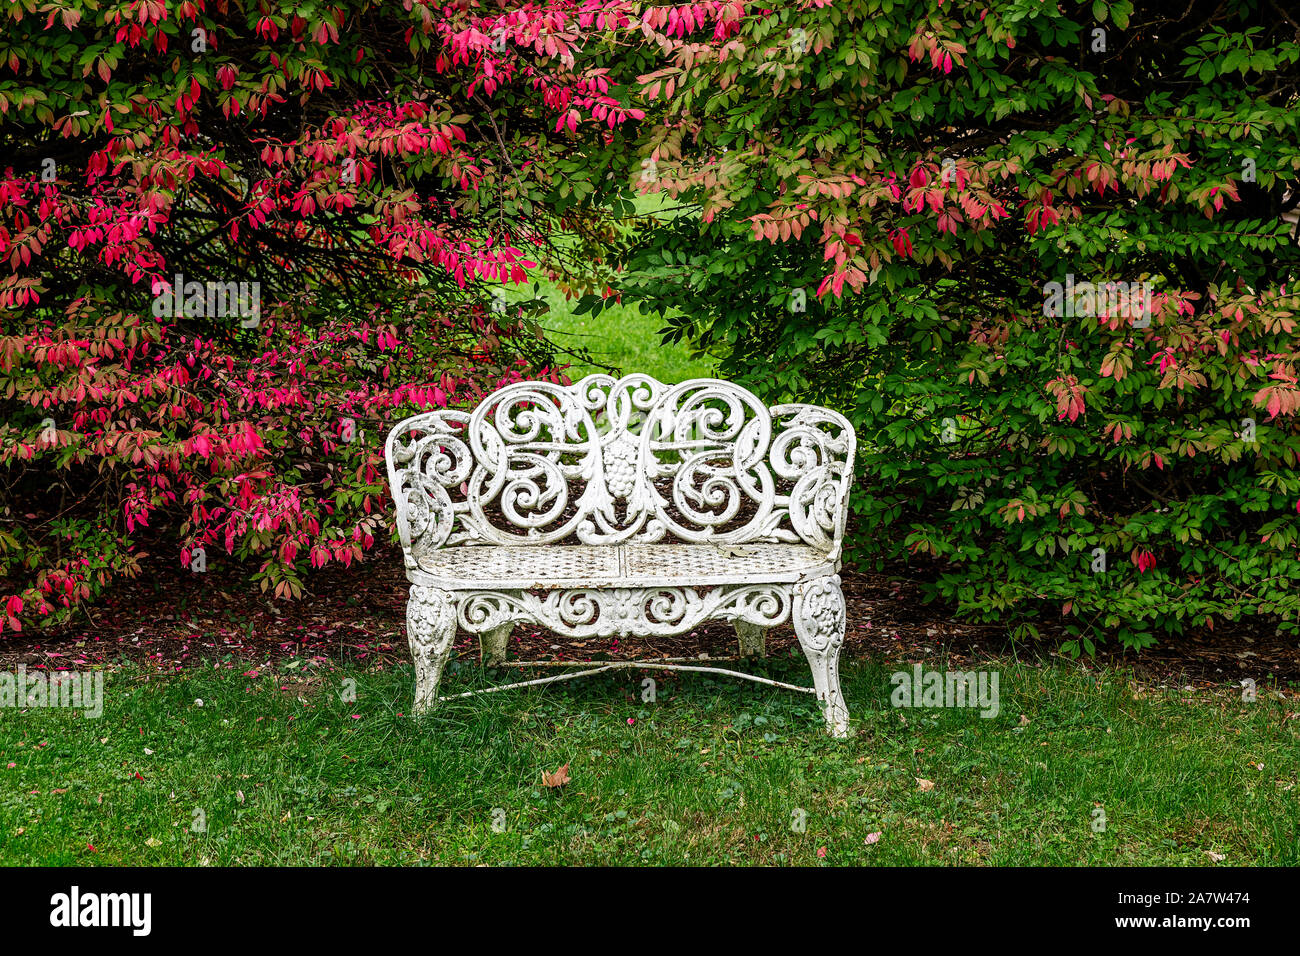 Charming garden bench with autumn foliage. Stock Photo